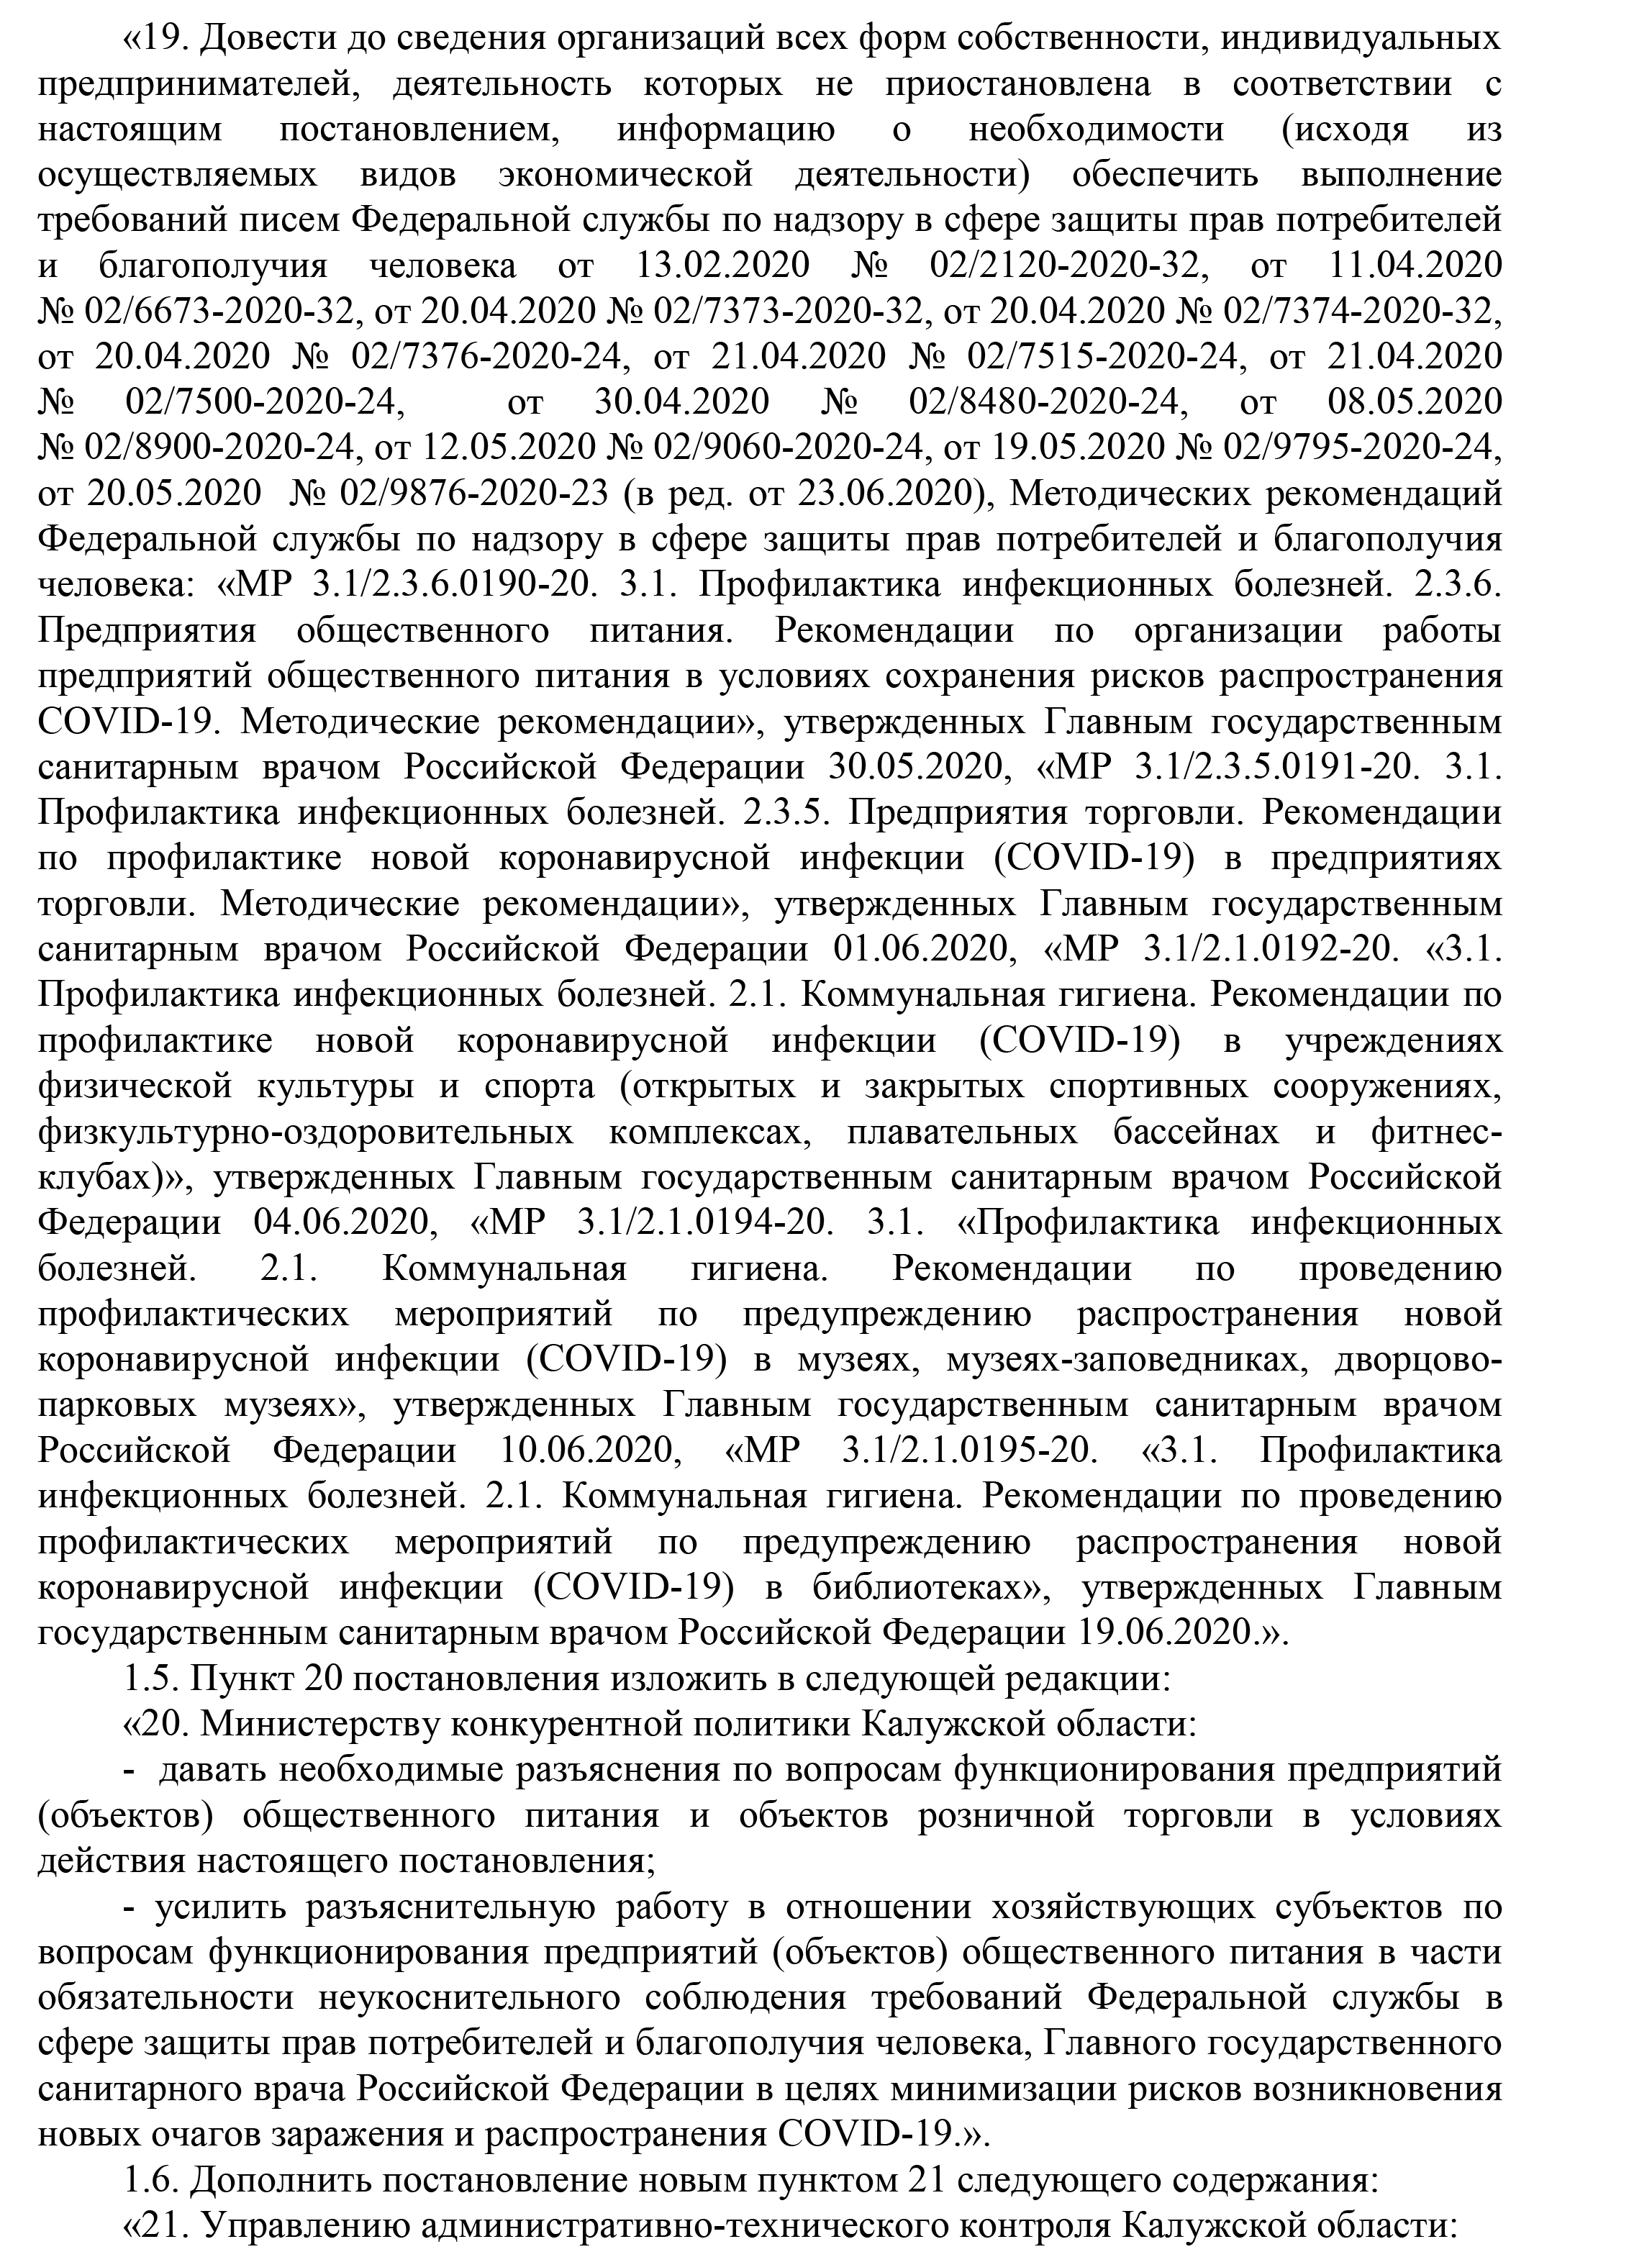 Постановление правительства Калужской области №566